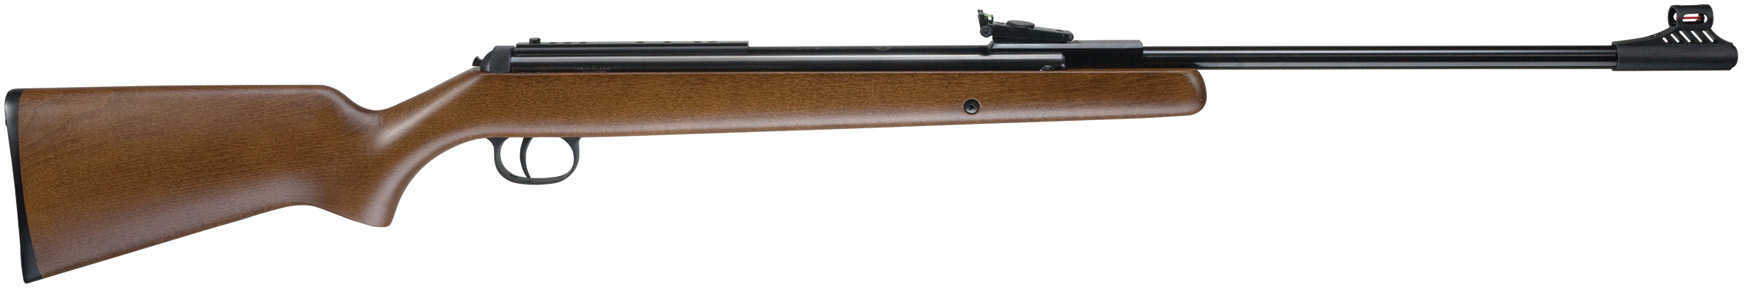 Umarex USA RWS Model 34 Air Rifle .22